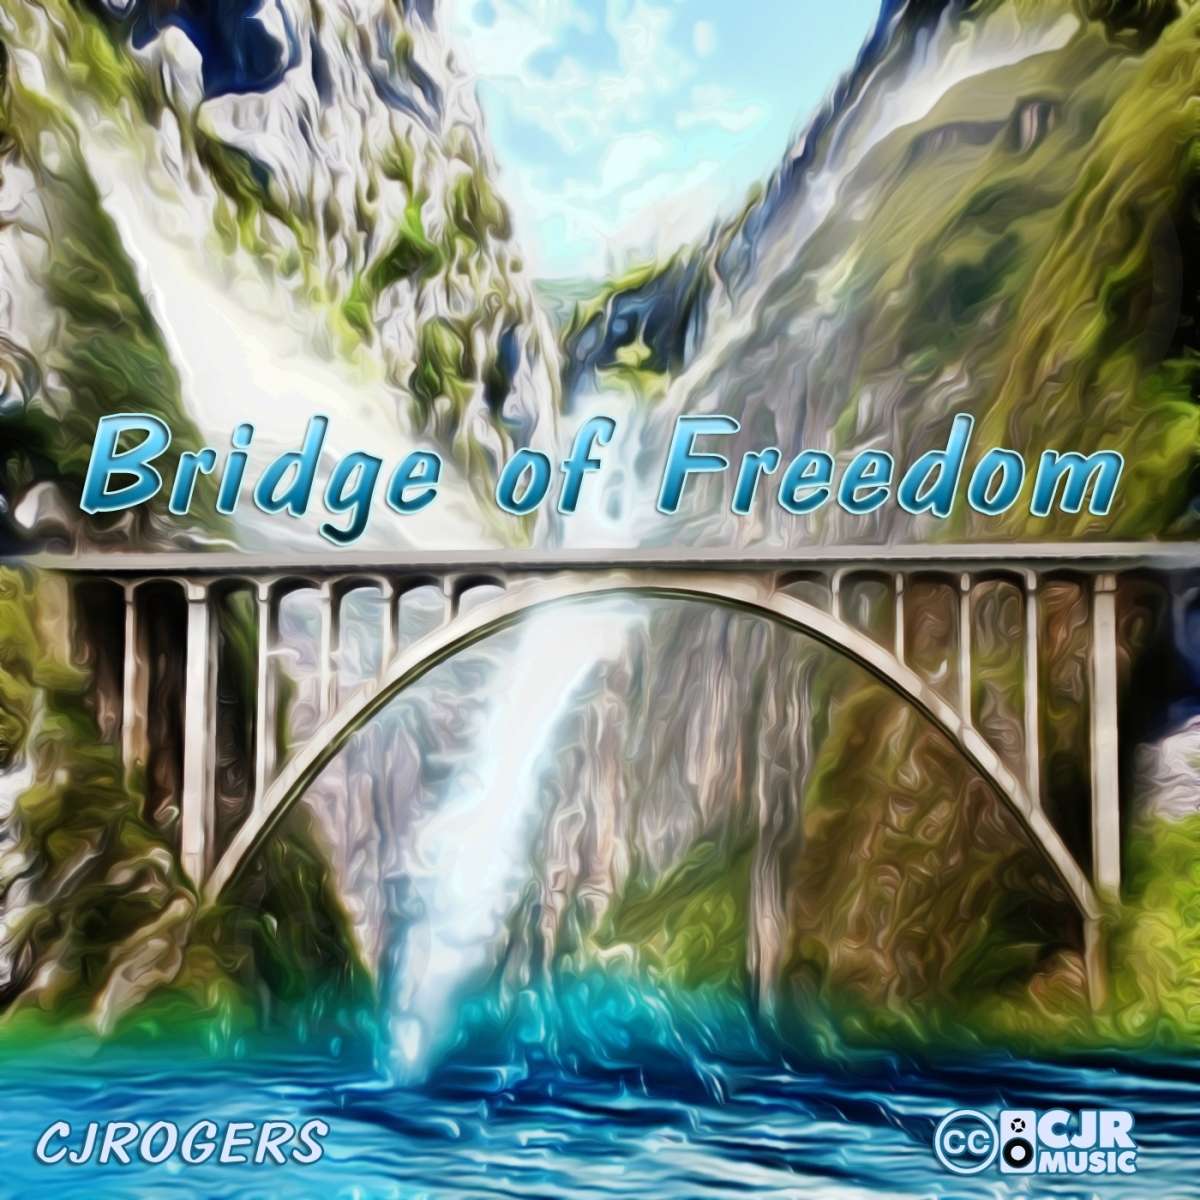 Bridge of Freedom - Fullsize Cover Art